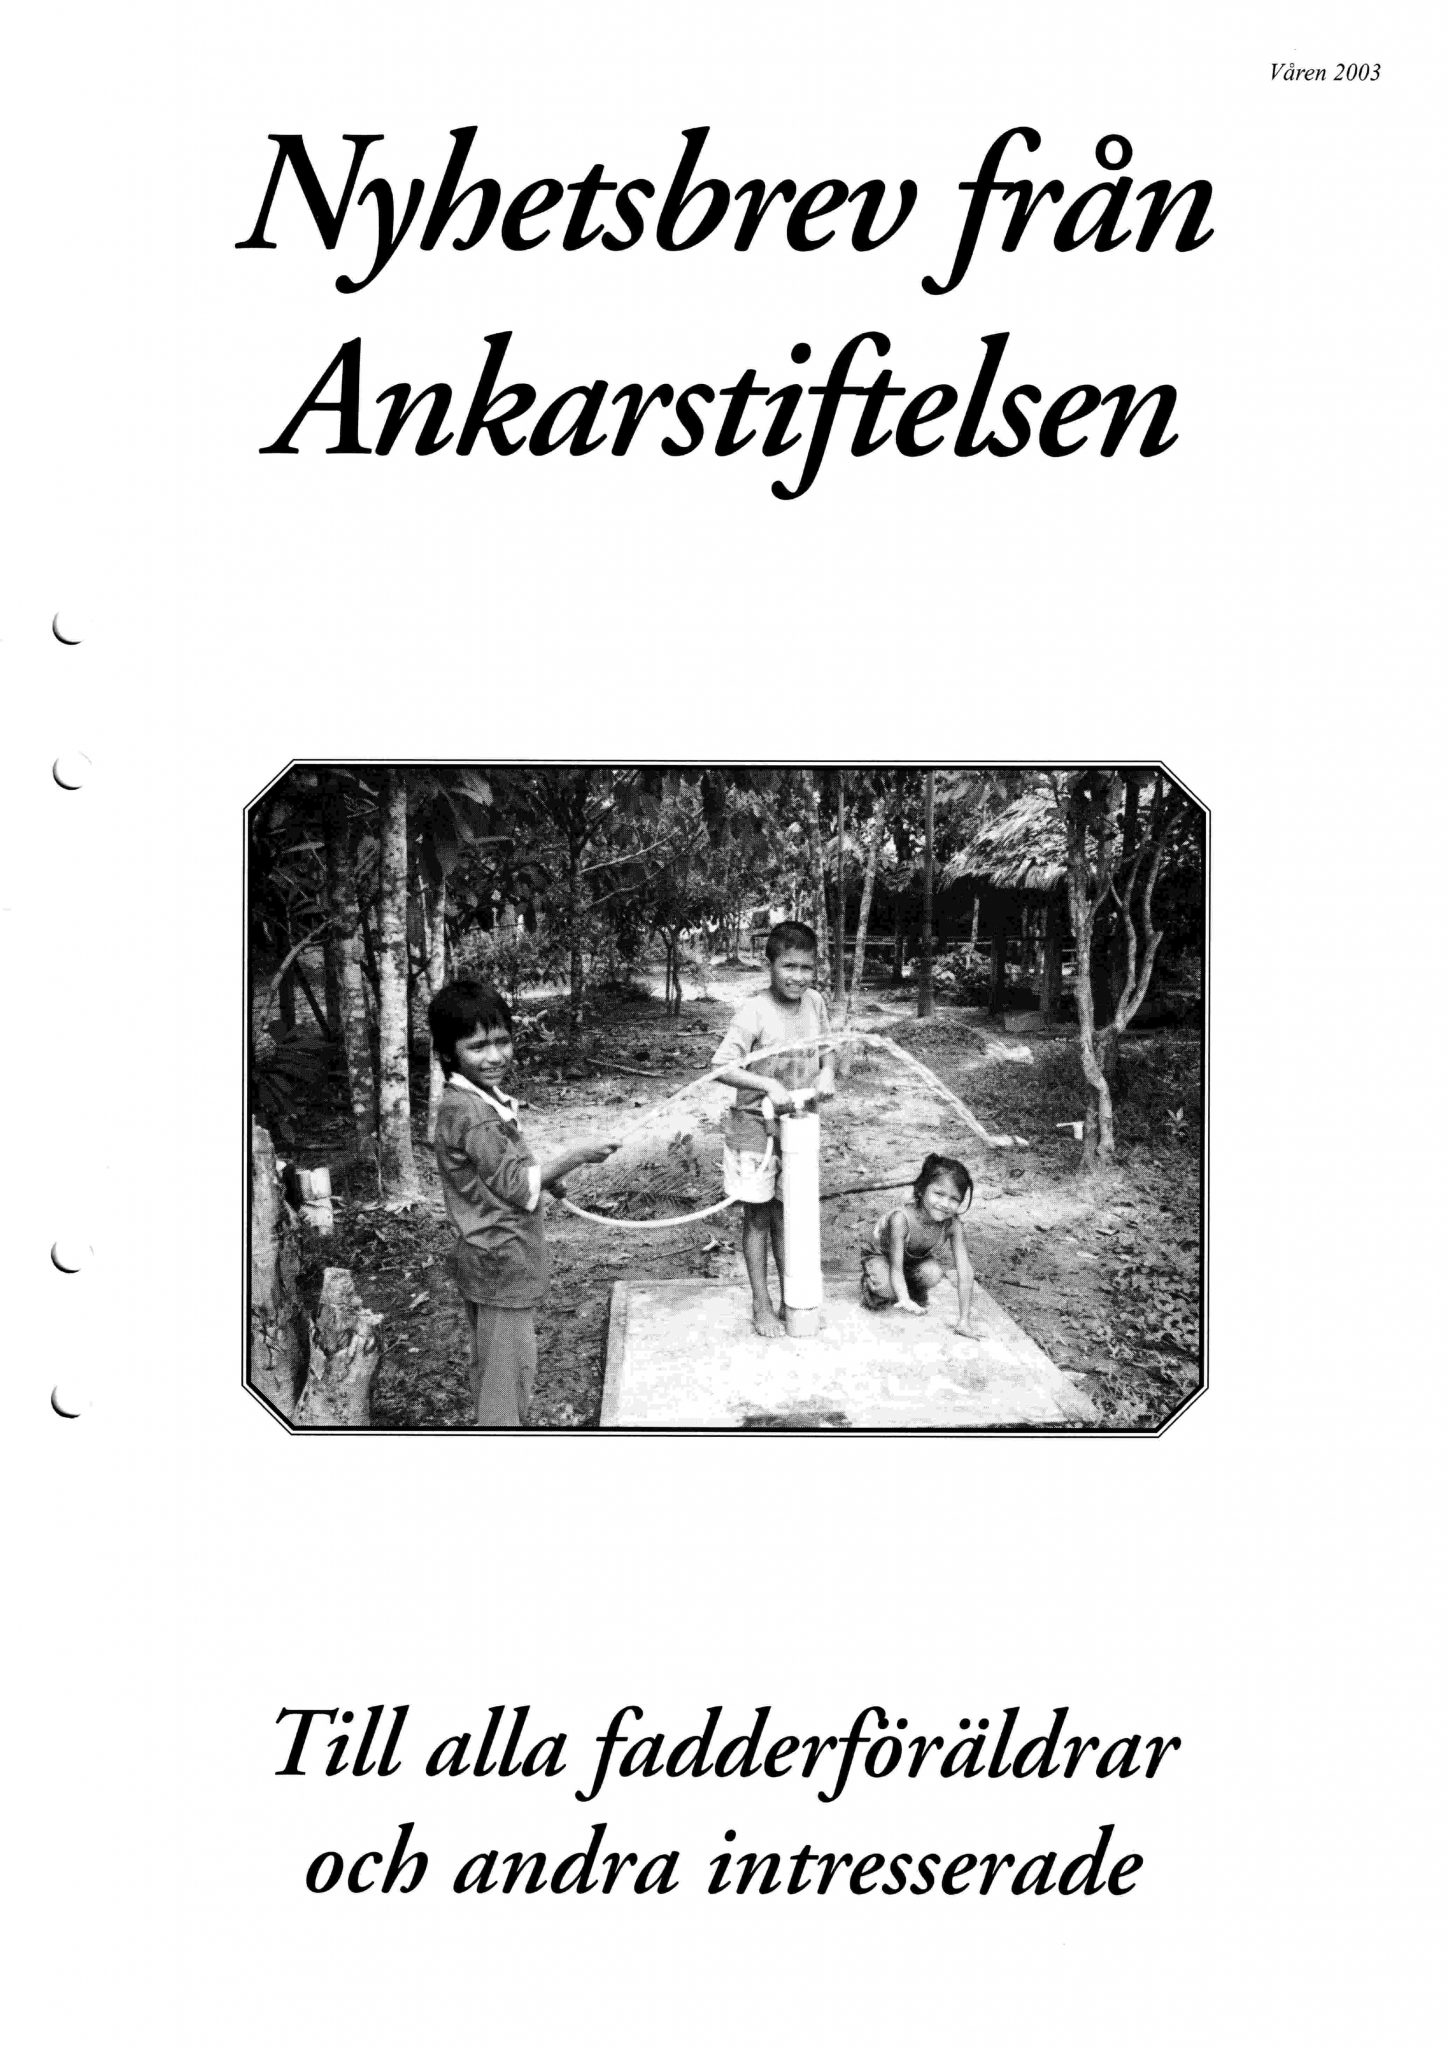 Bild på framsidan av Ankarbladet 2003 Nr. 1